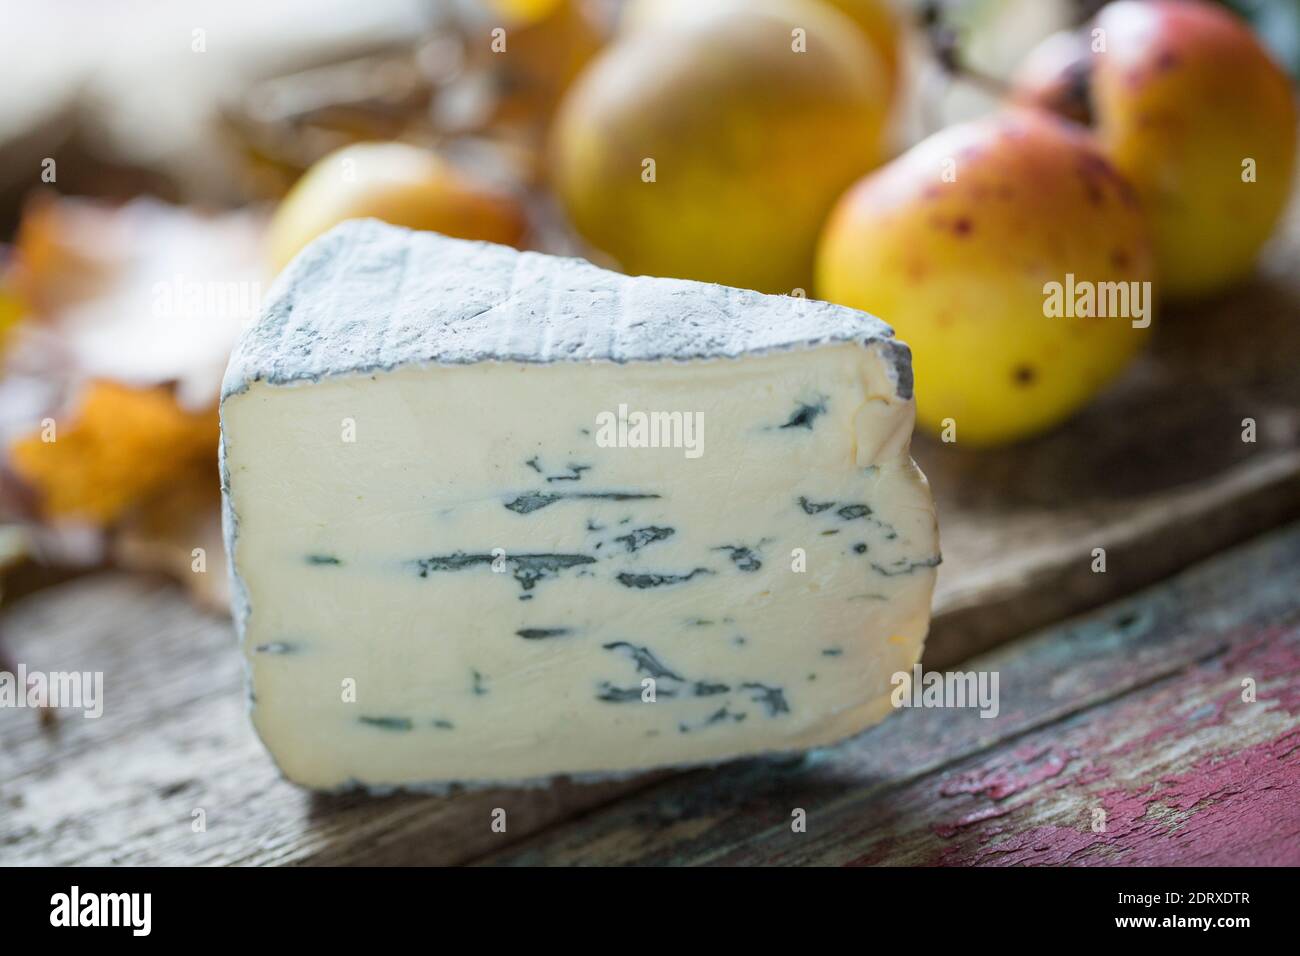 Un cuneo di formaggio Montagnolo acquistato da un supermercato nel Regno Unito. Il Montagnolo è un formaggio a base di latte di vacca azzurra dalla Germania. Inghilterra GB Foto Stock